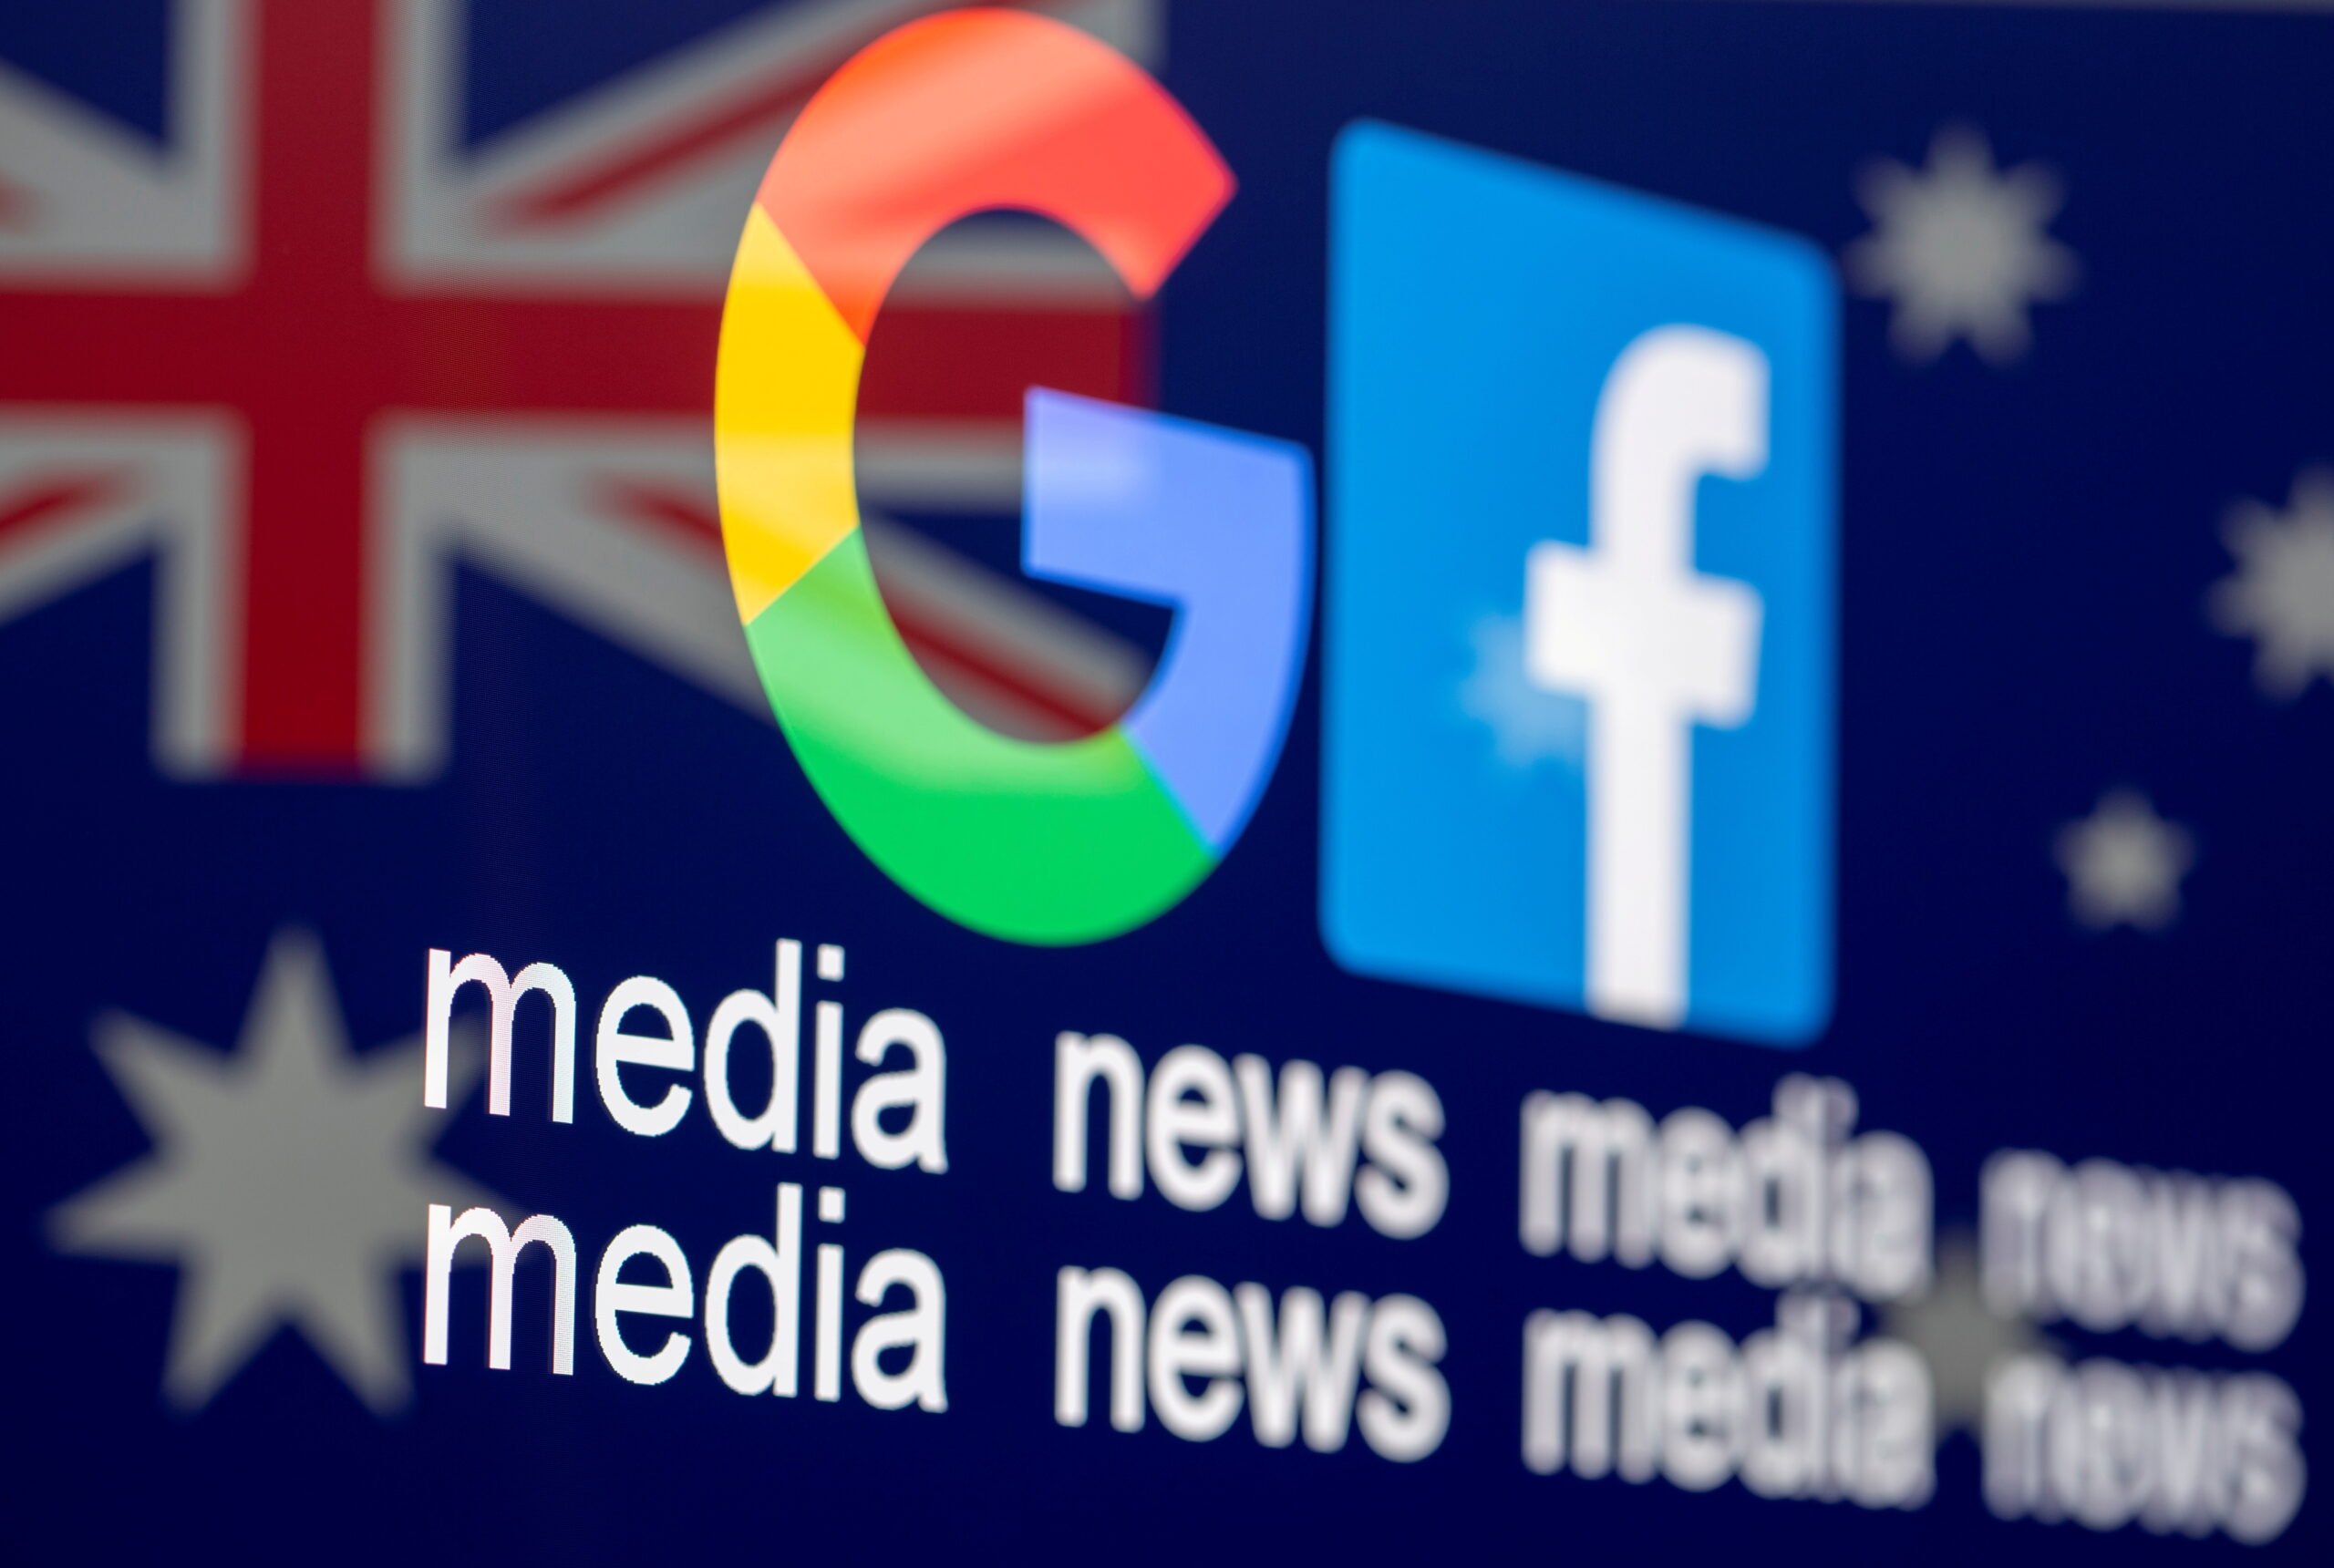 Ο Ψηφιακός Πόλεμος: Αυστραλοί νομοθέτες αναμένεται να περάσουν τροποποιήσεις στο Facebook, στο Google